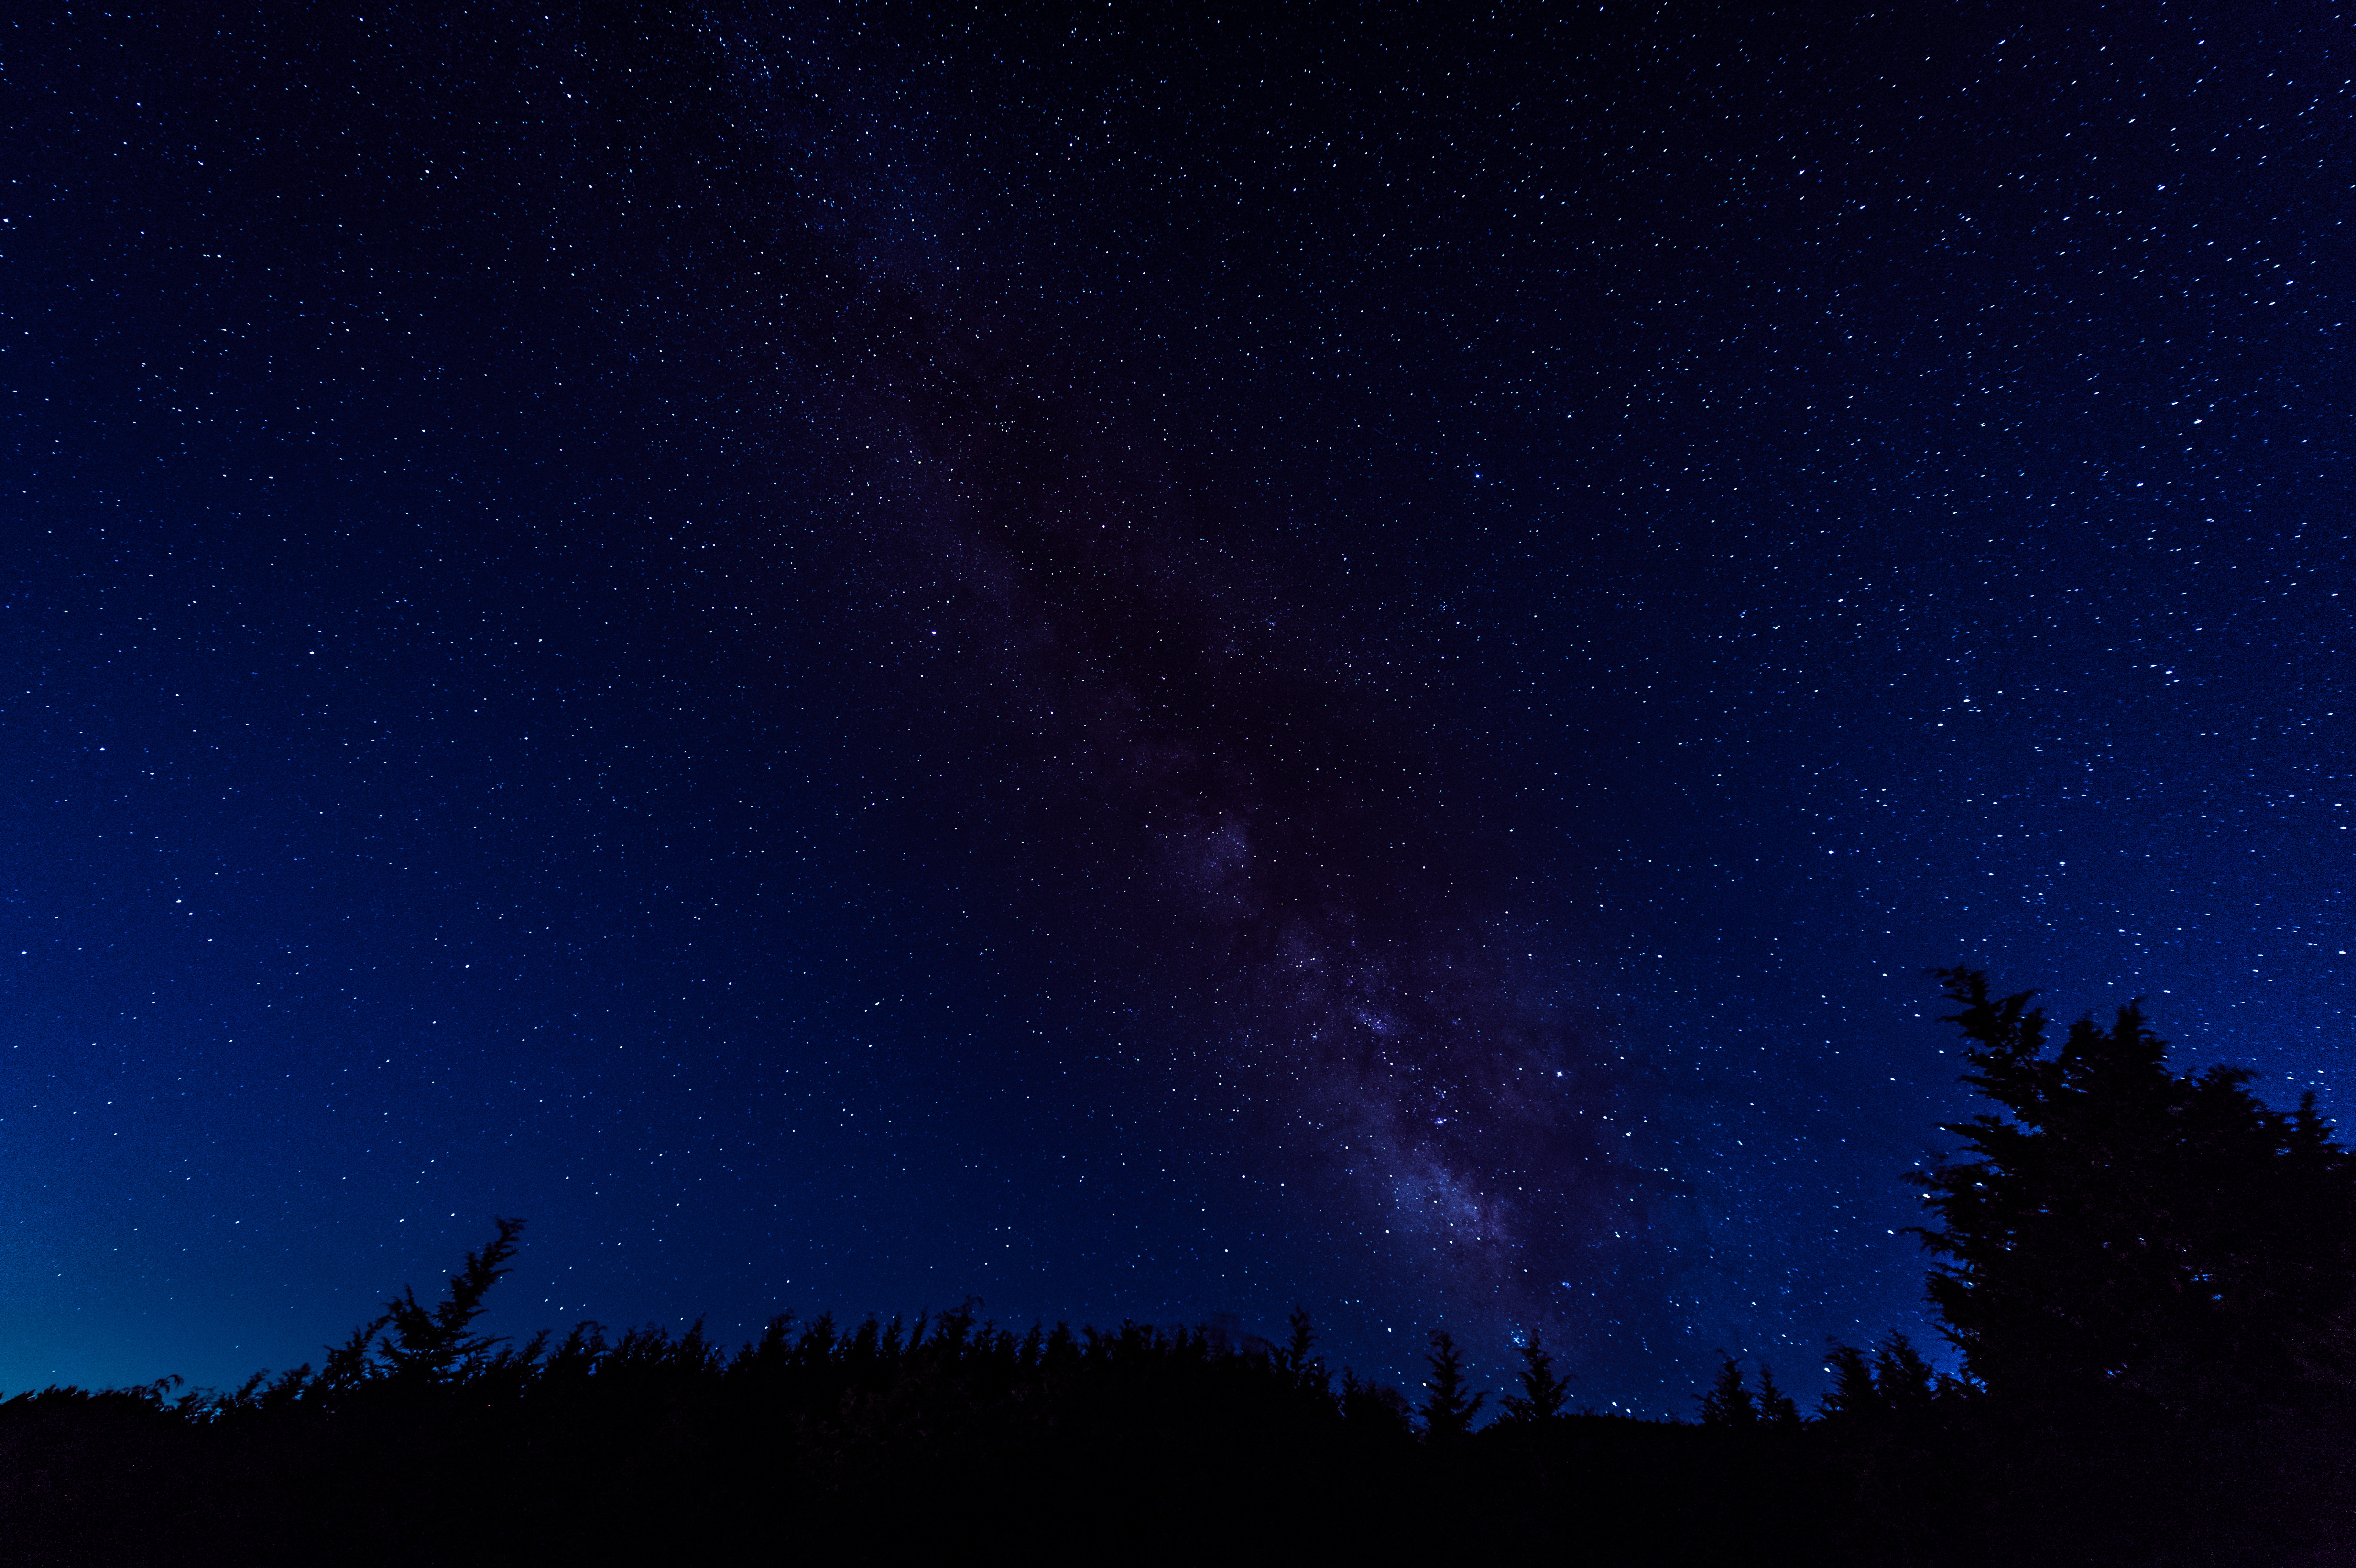 夜空いっぱいの星空 鏡野町笠菅峠 の写真 画像 フリー素材 ぱくたそ